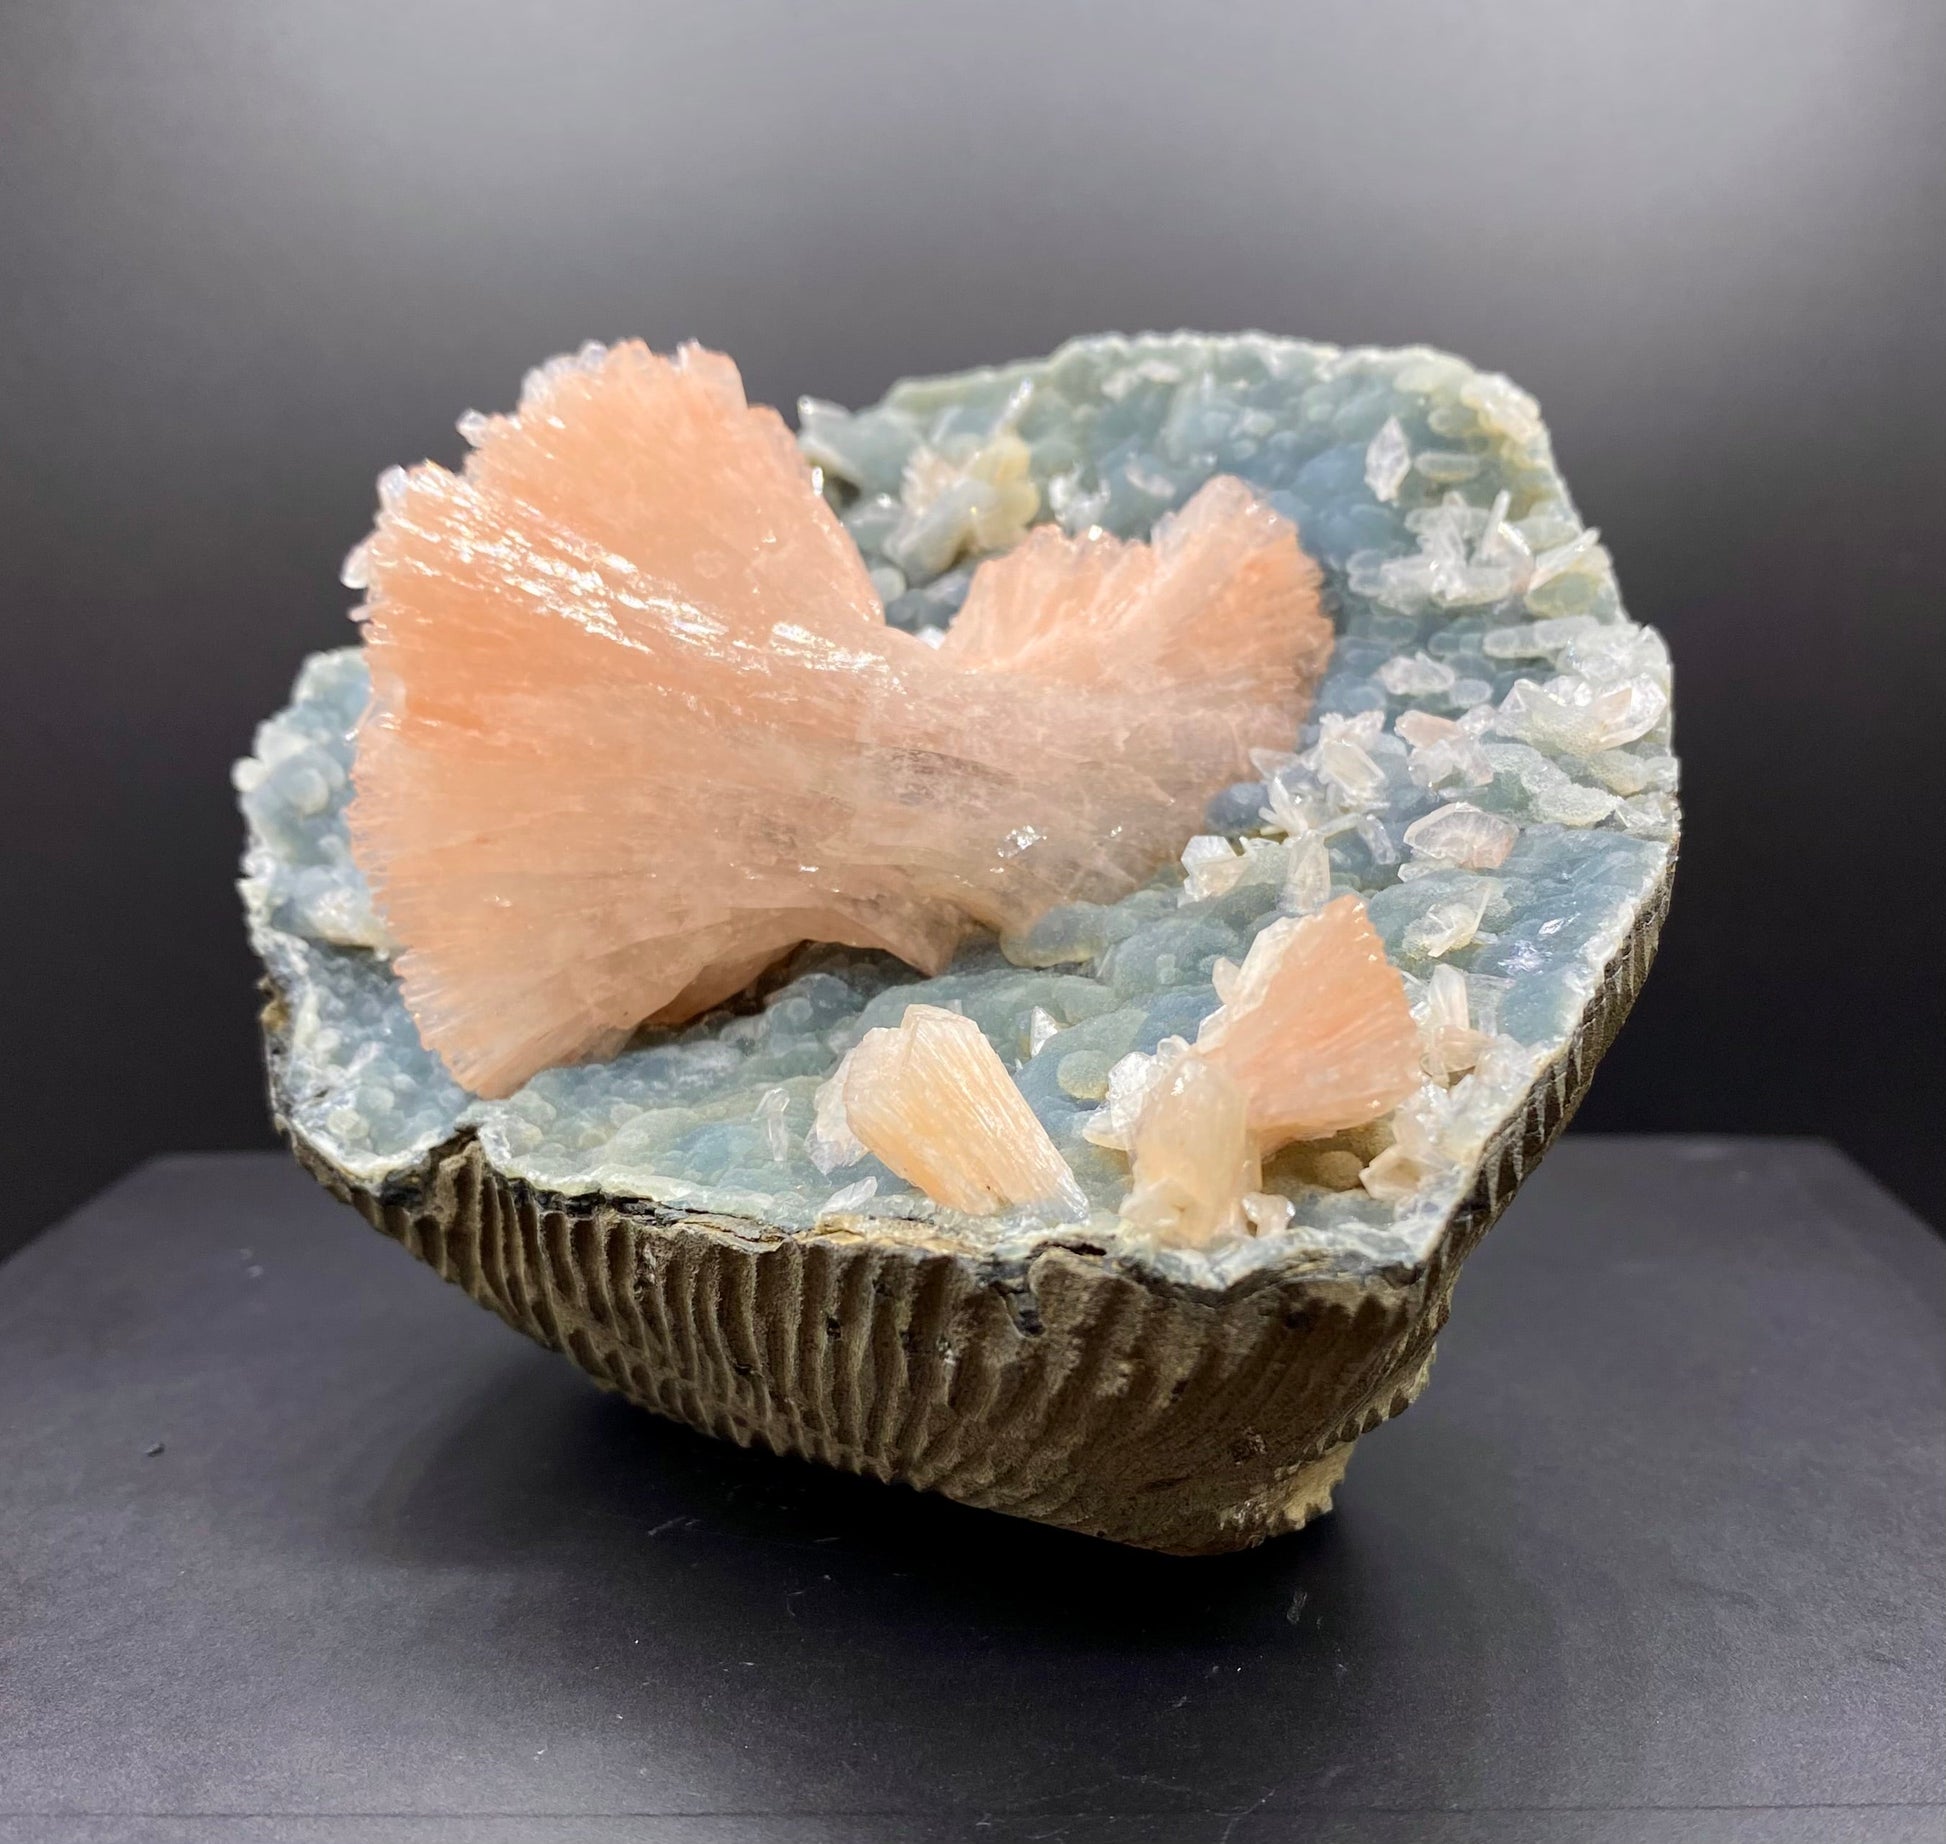 Heulandite & Chalcedony DK11 Superb Minerals 